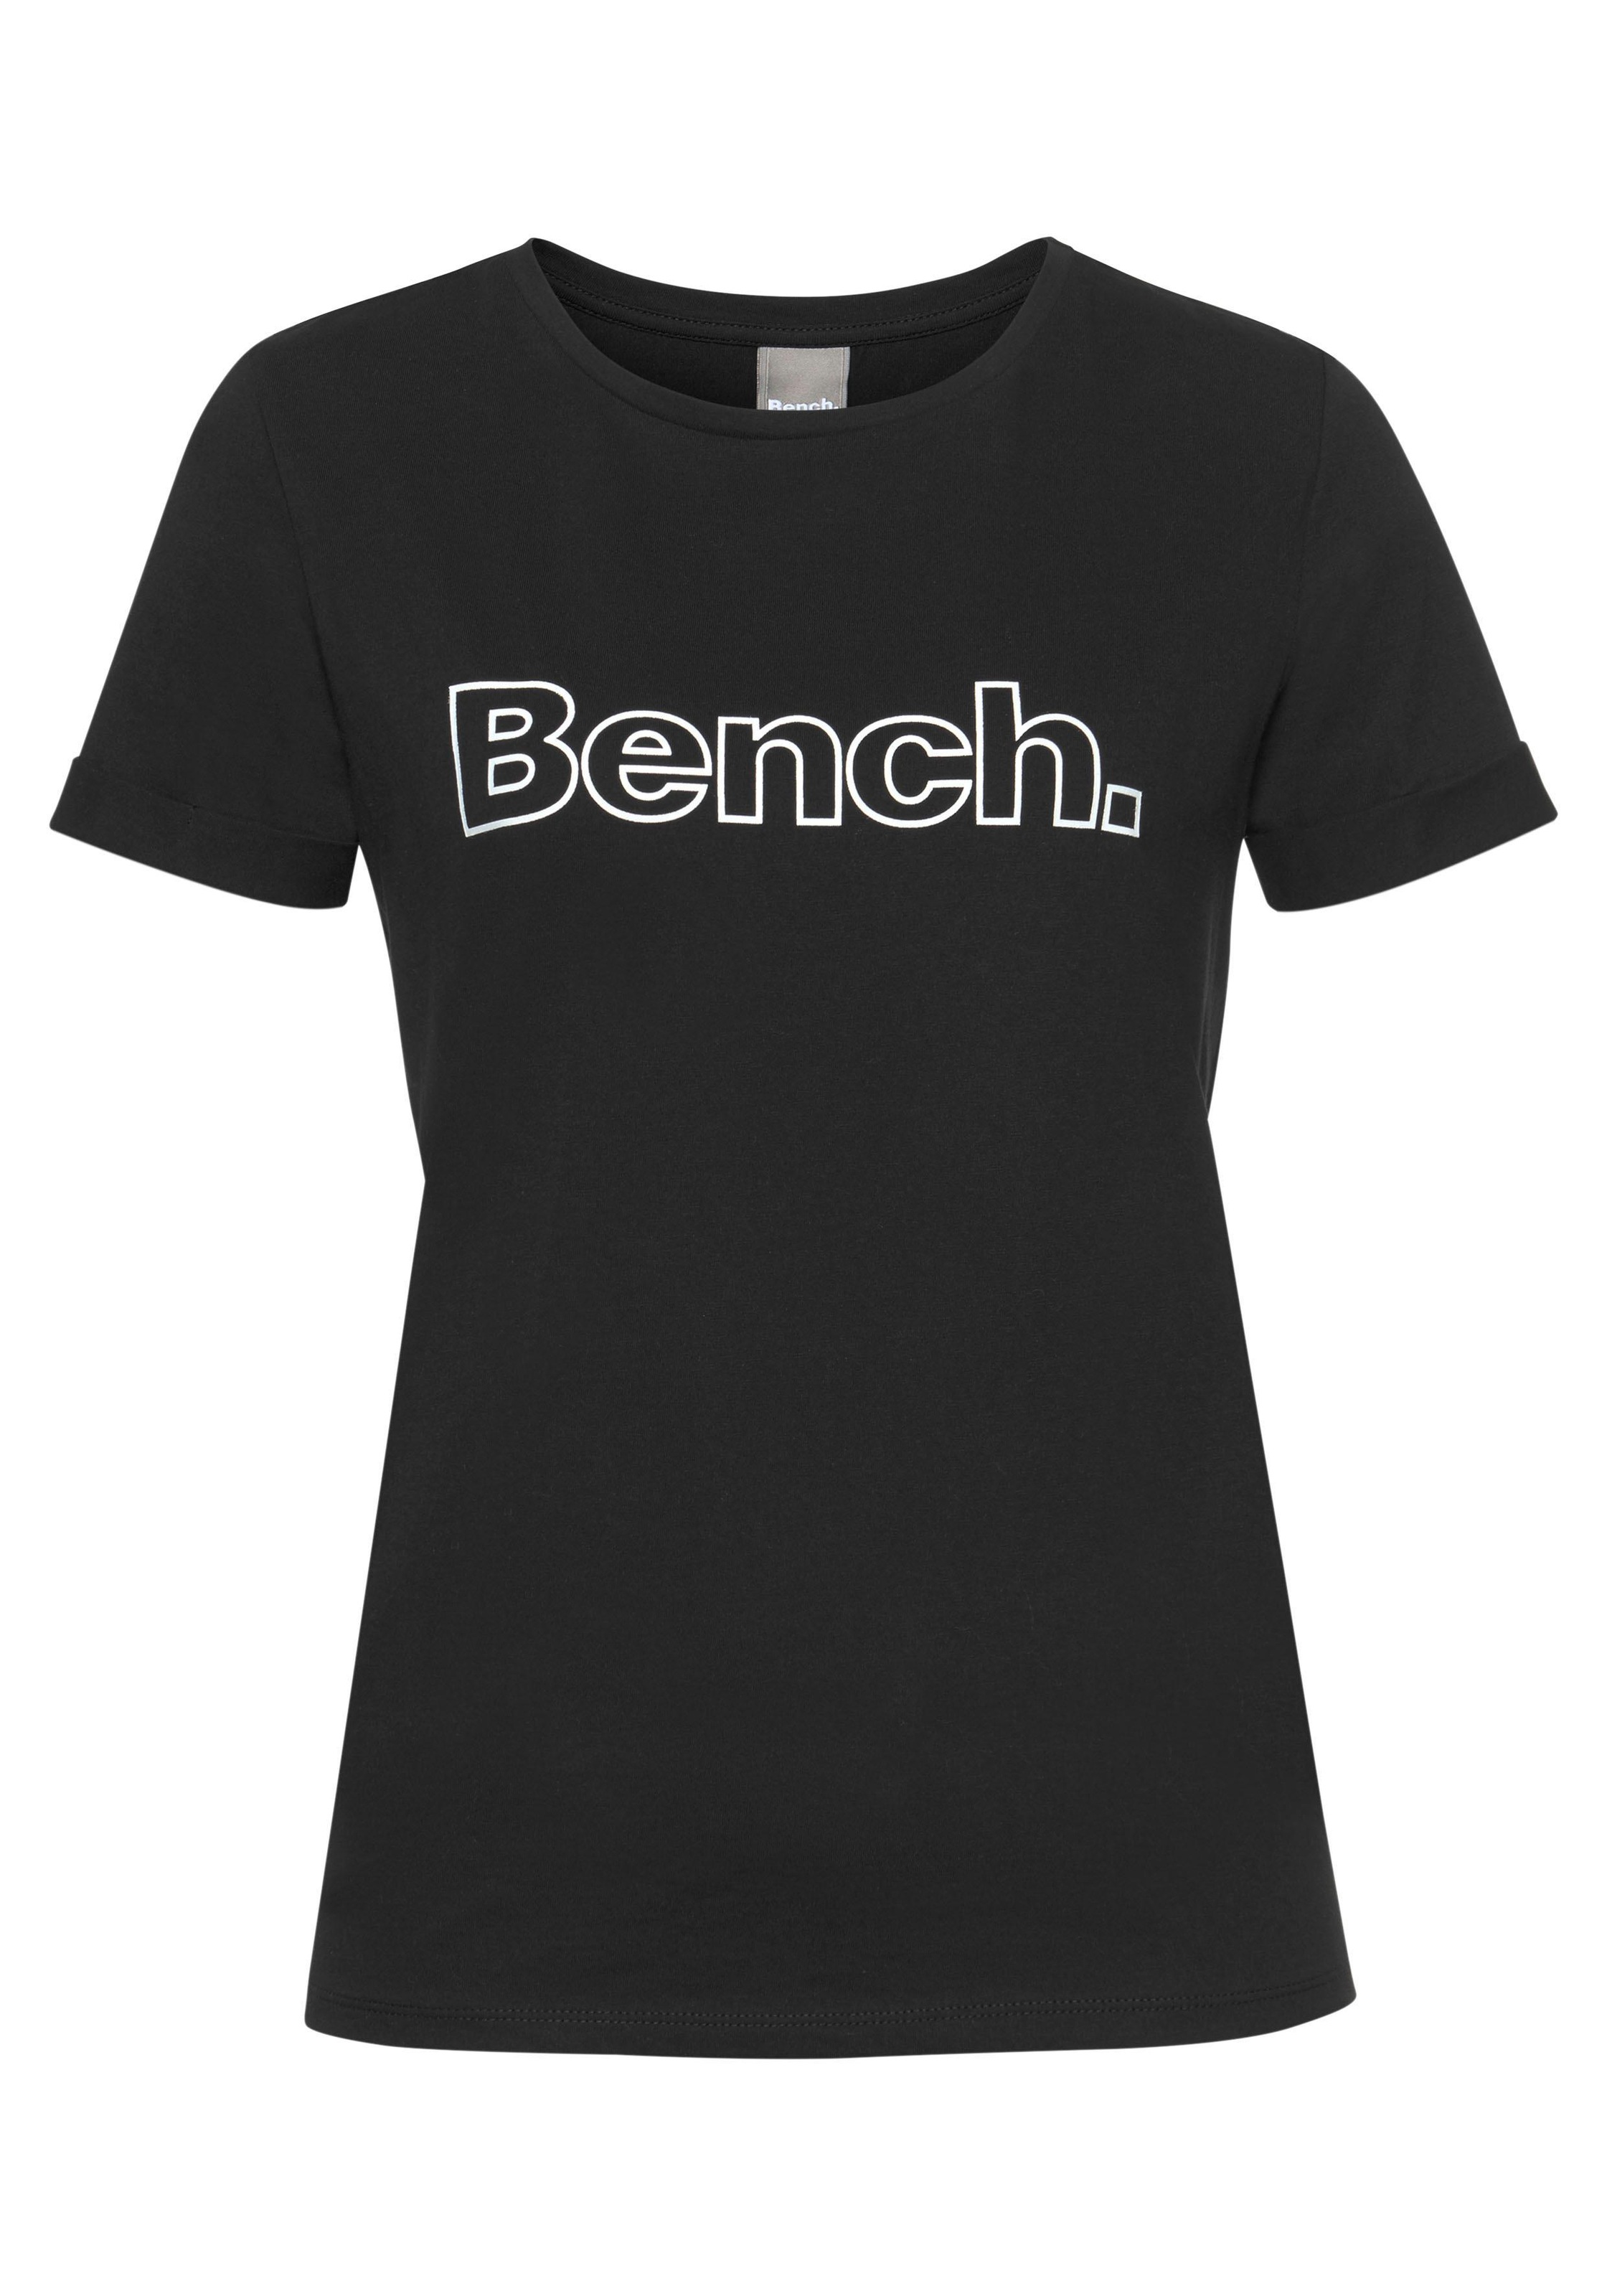 Bench. T-Shirt shoppen | T-Shirts